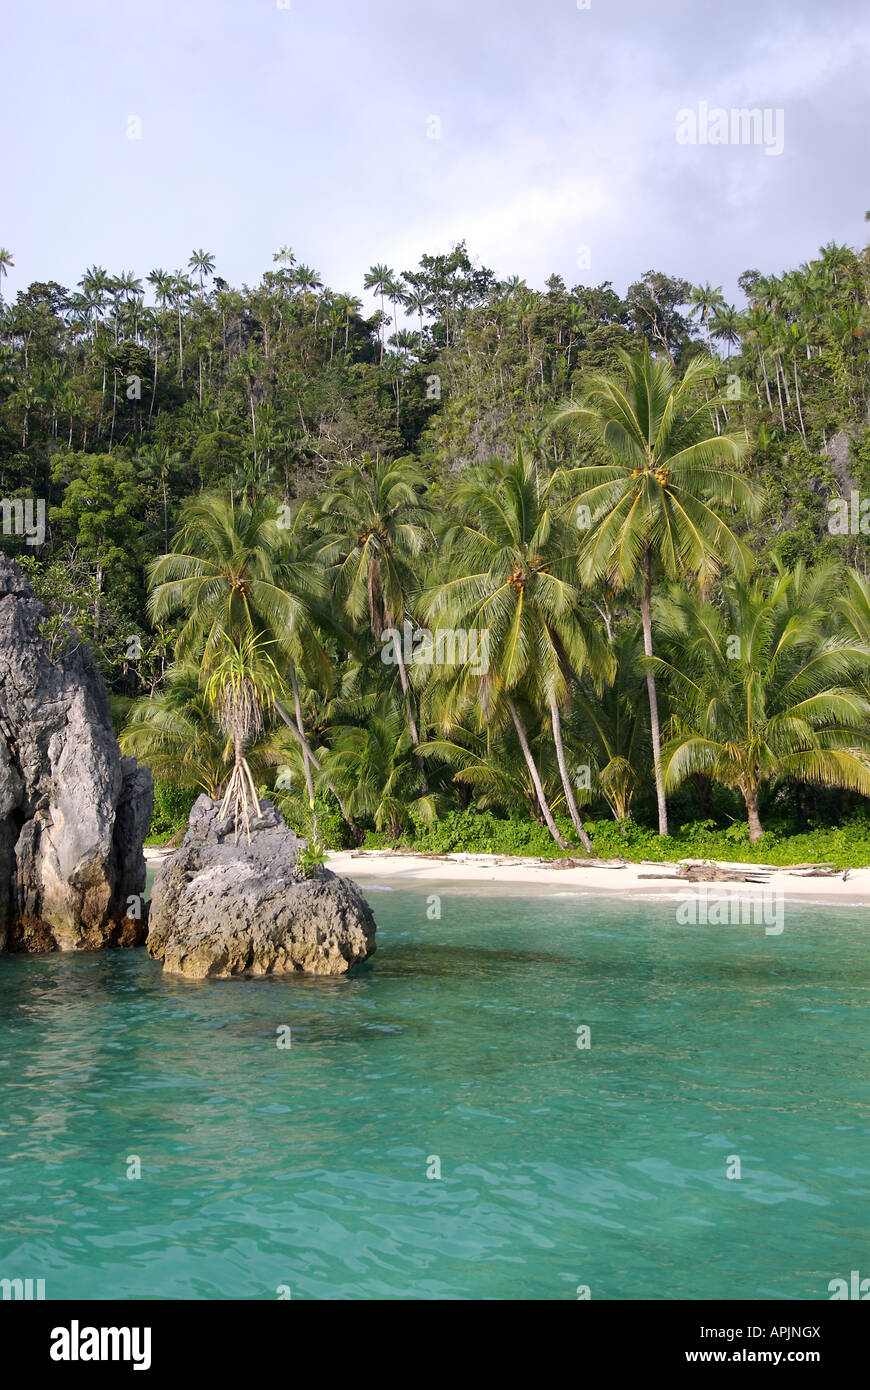 Líder de la Jungla de Indonesia tropical de las prístinas playas de la región de la Bahía de Triton de Irian Jaya, Indonesia Foto de stock